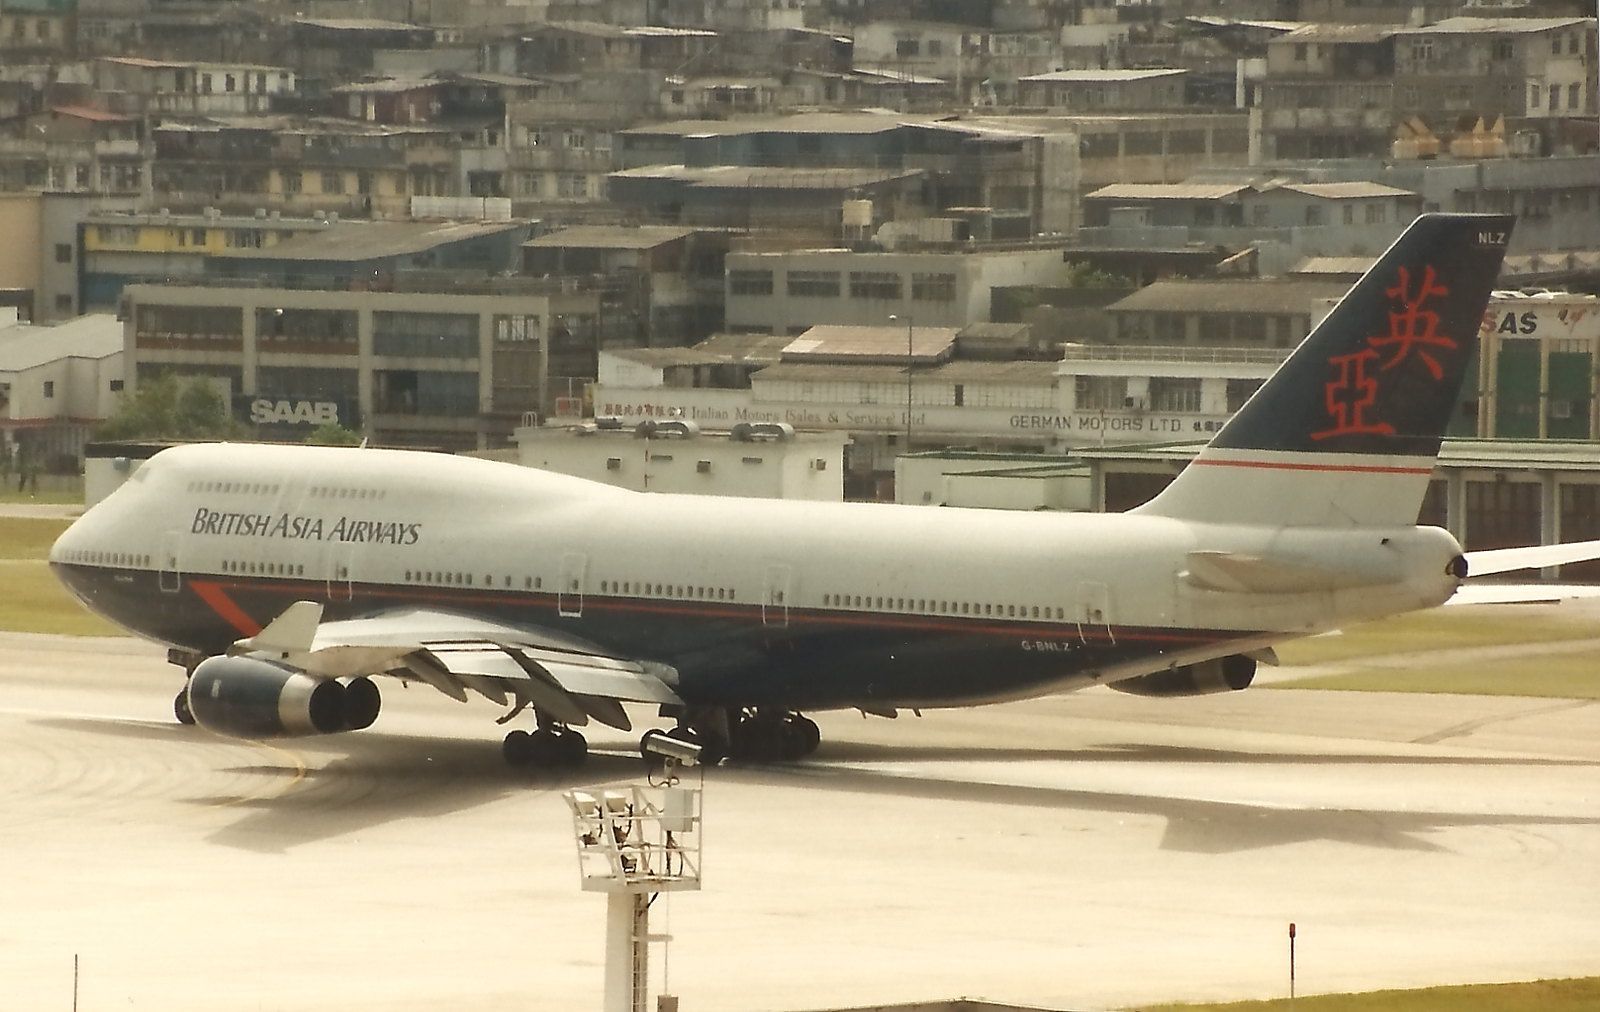 British Asia Airways Boeing 747